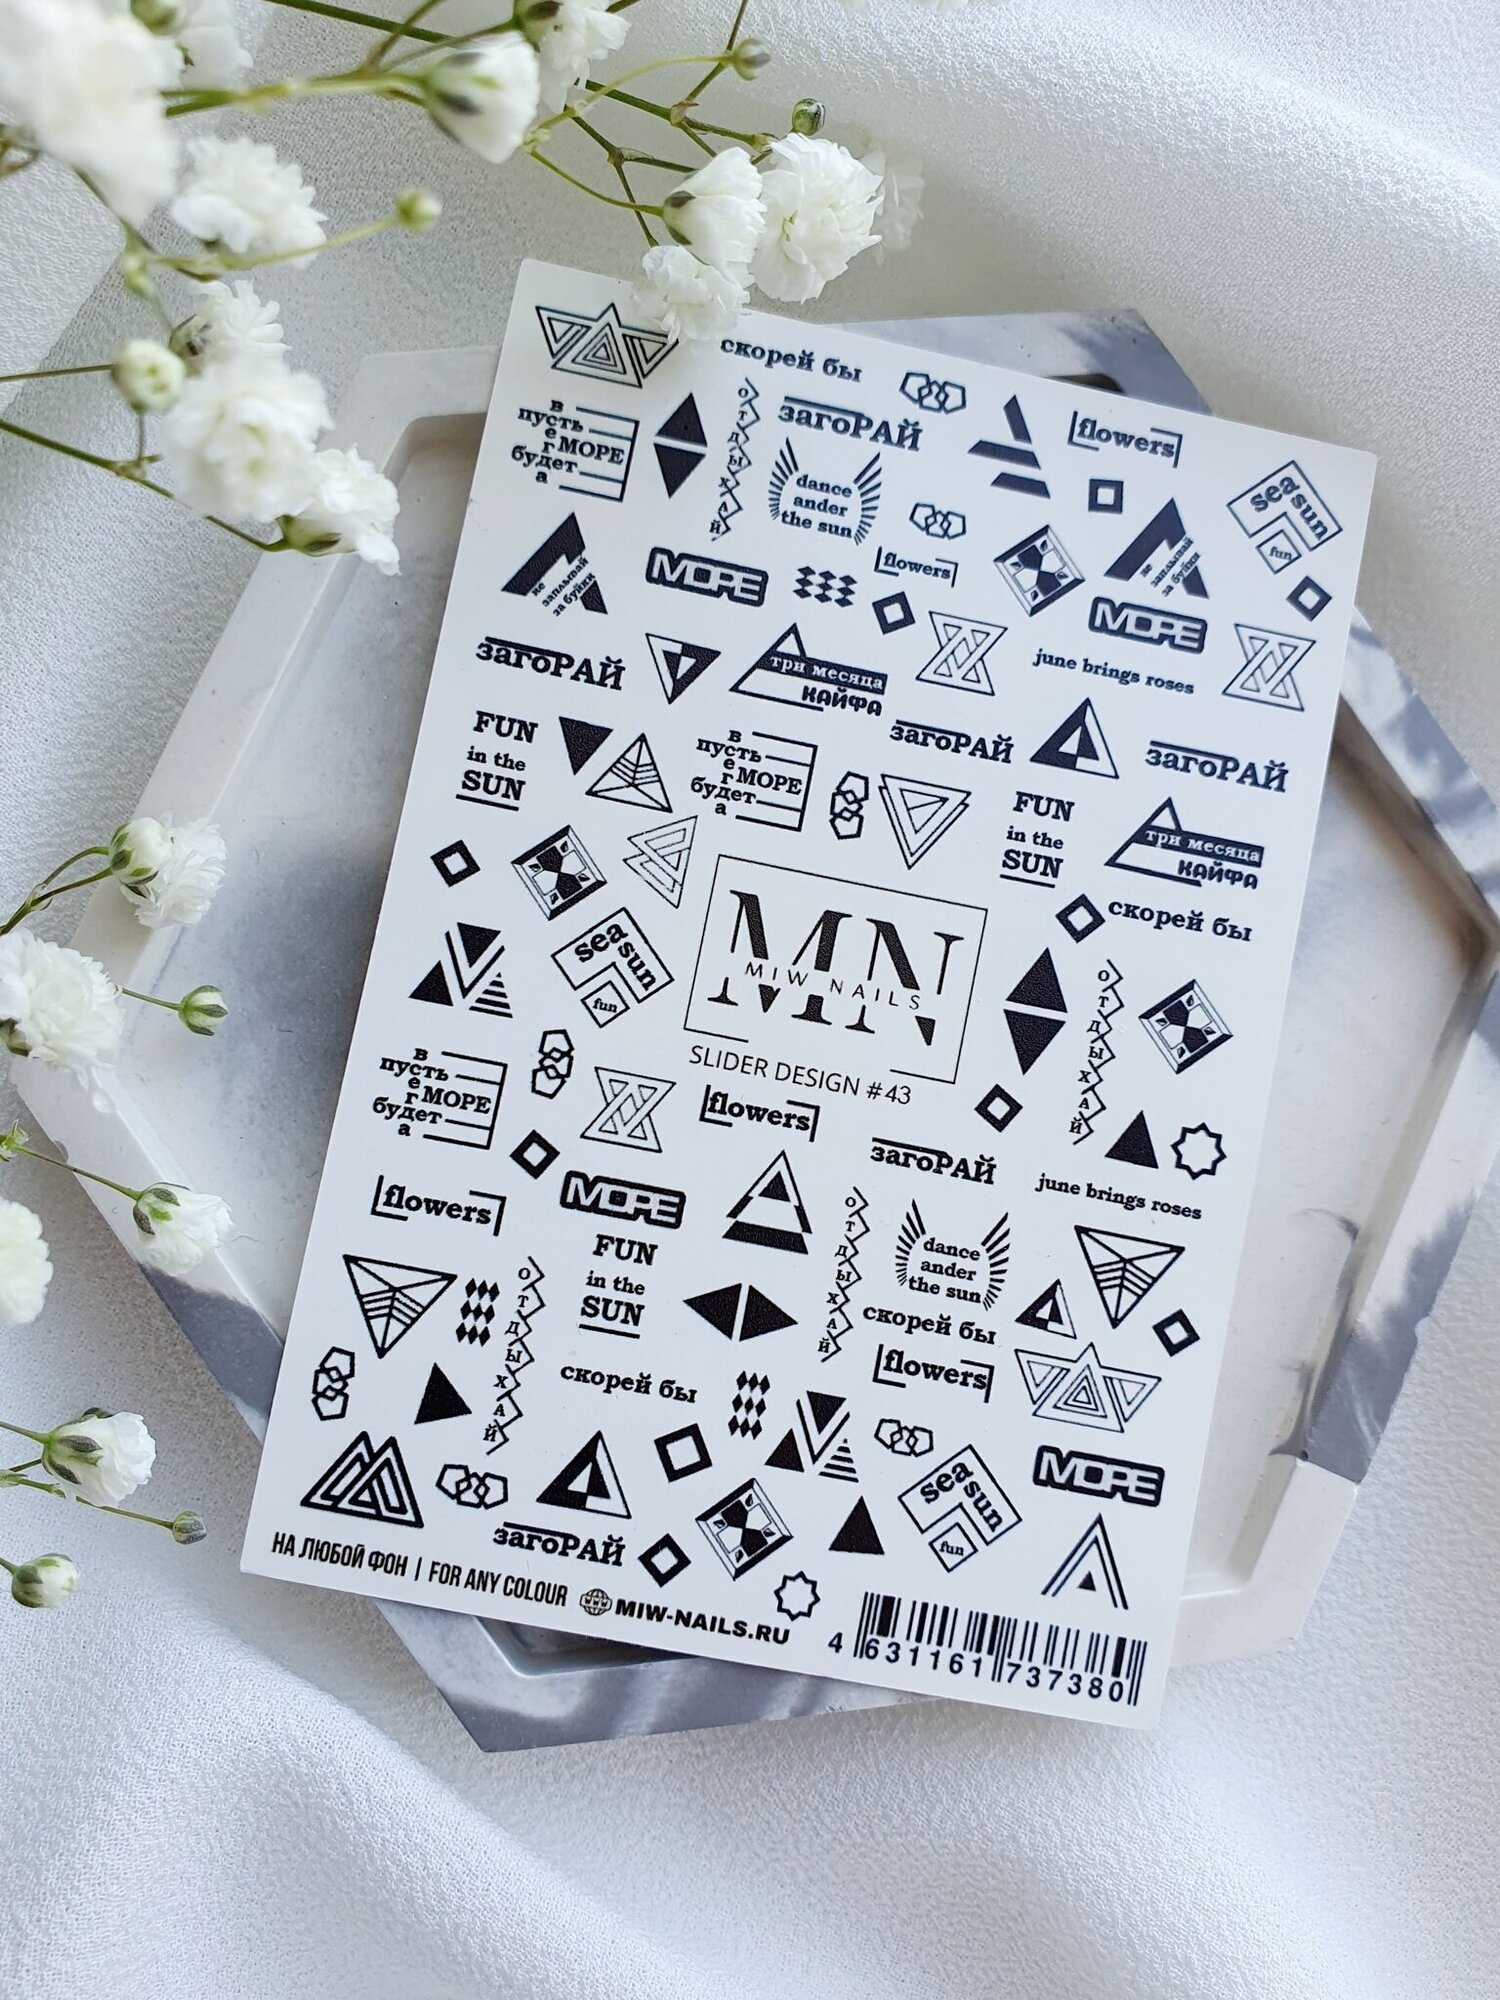 MIW Nails "Слайдеры для ногтей" водные наклейки для дизайна #43 черно-белый геометрия, фигуры